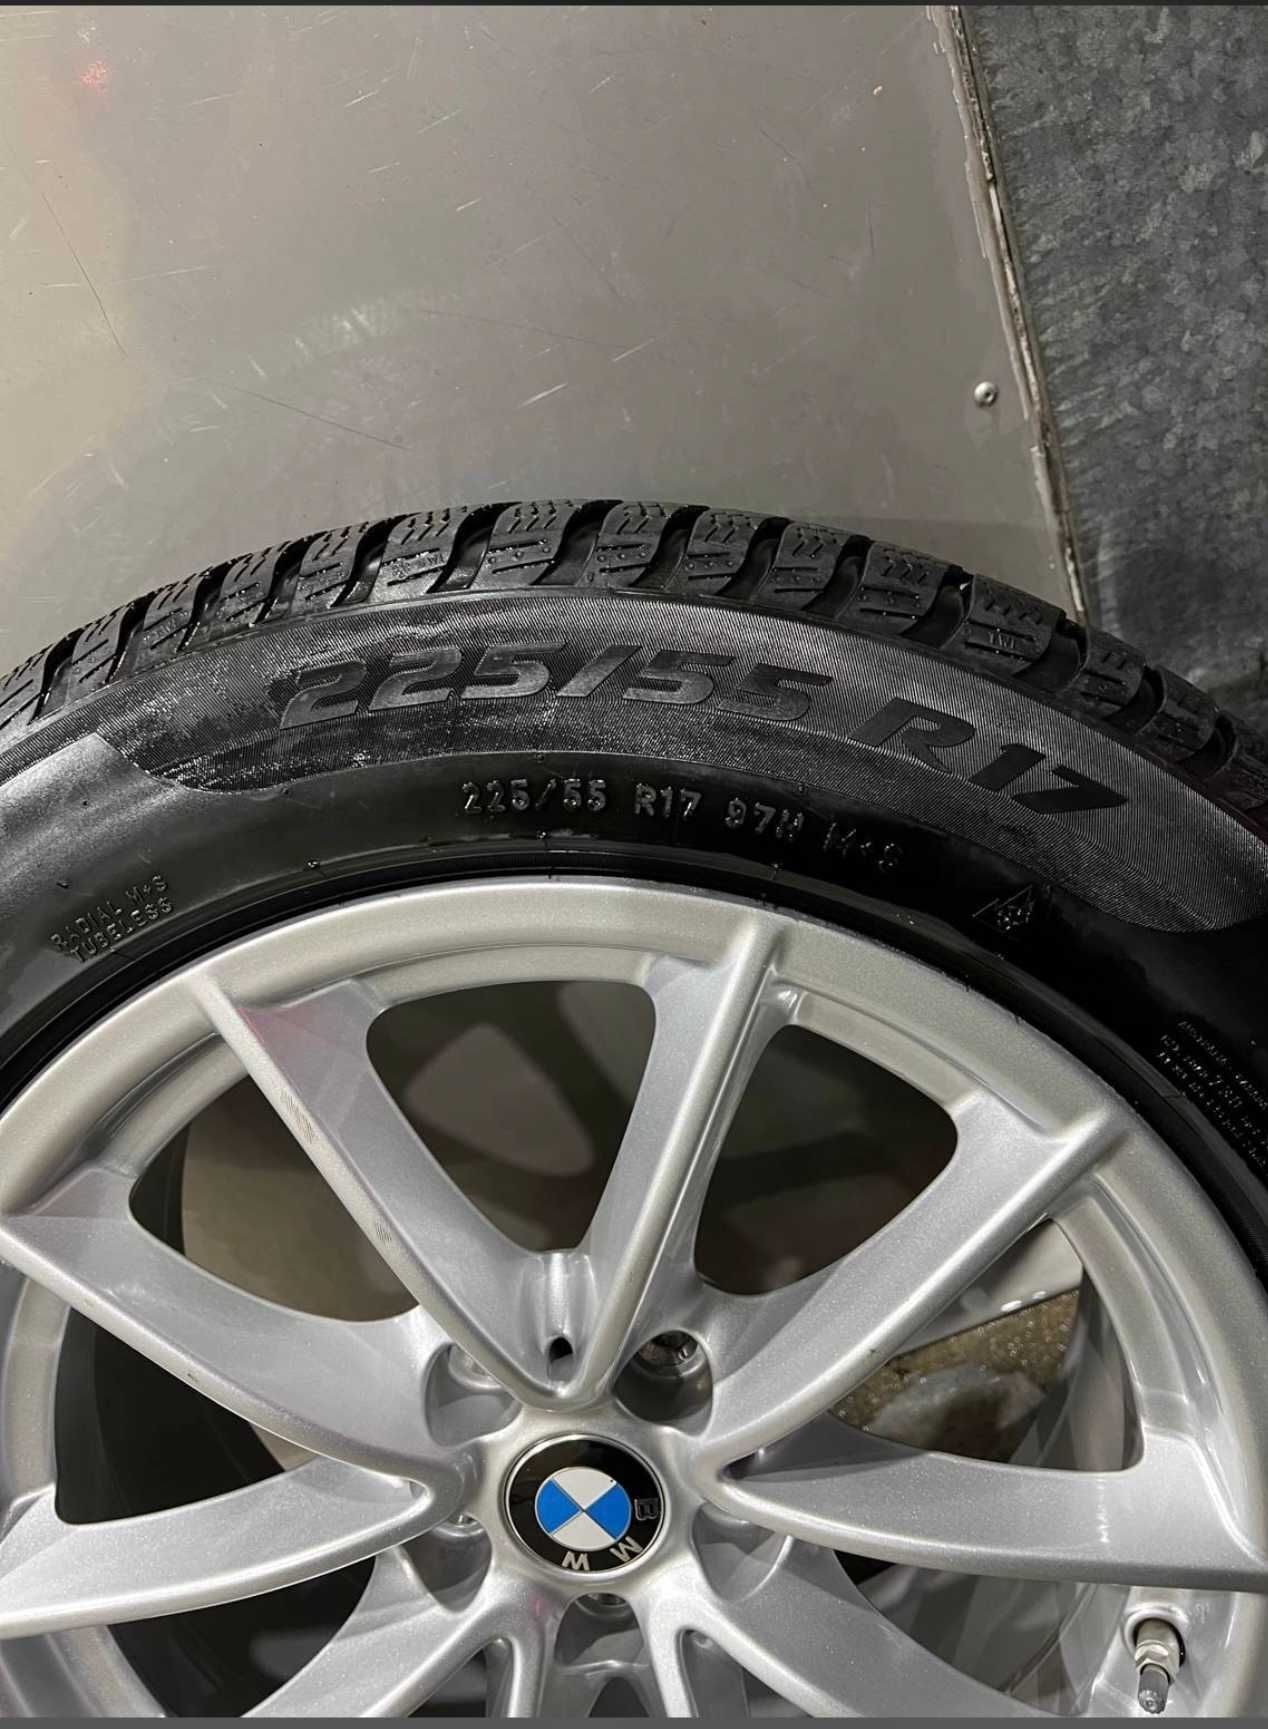 Jantes originais BMW série 5 com pneus Pirelli e captores de pressão